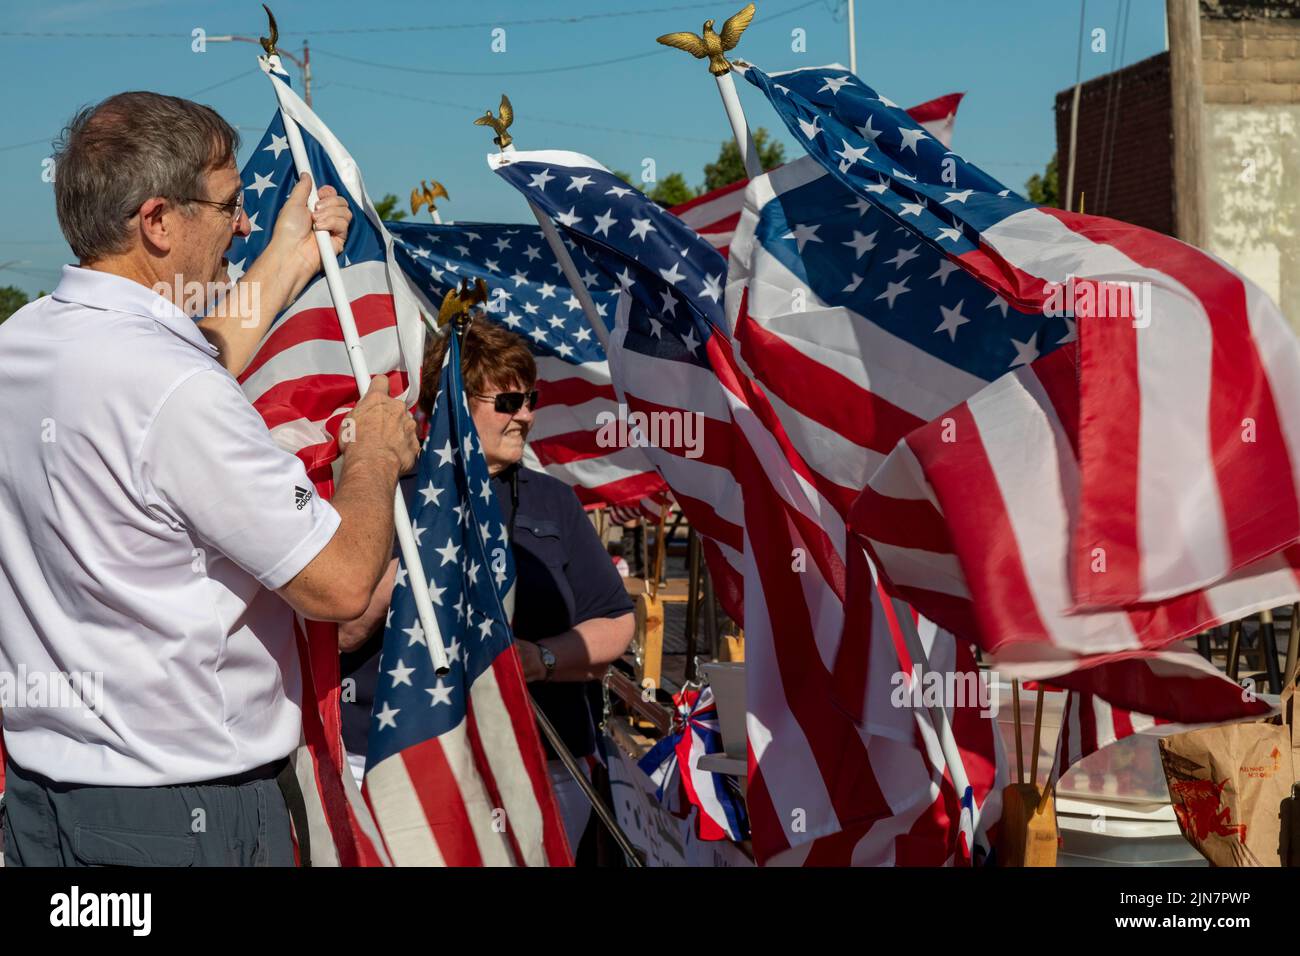 Hutchinson, Kansas - La gente decora el flotador de la Banda Municipal de Hutchinson para el 'Patriots Parade' anual del 4 de julio en la zona rural de Kansas. Foto de stock